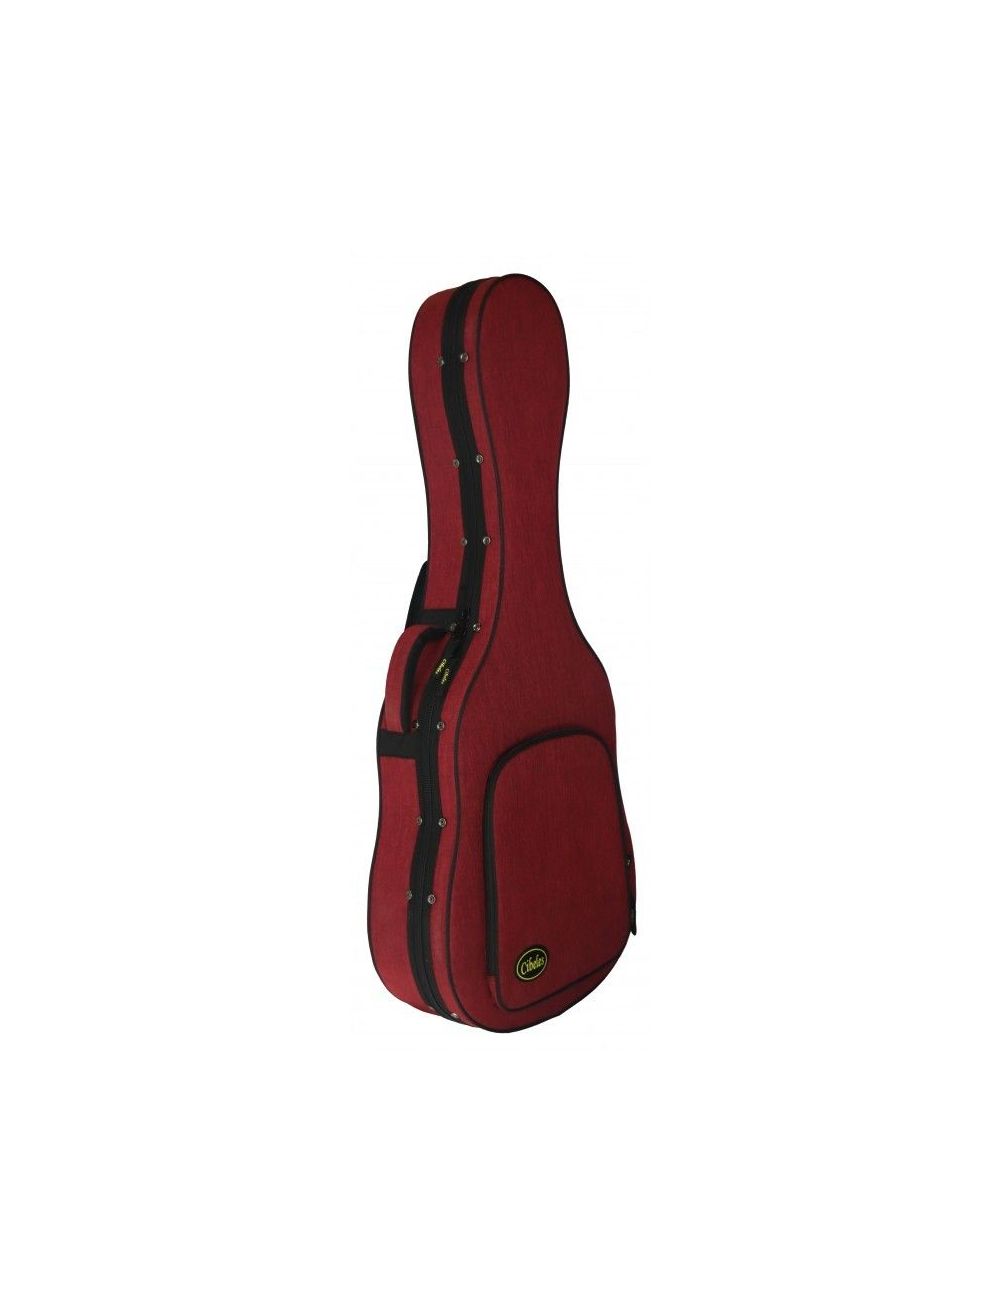 Cibeles C140.300-13 RED Styropor Klassische GitarrenKoffer